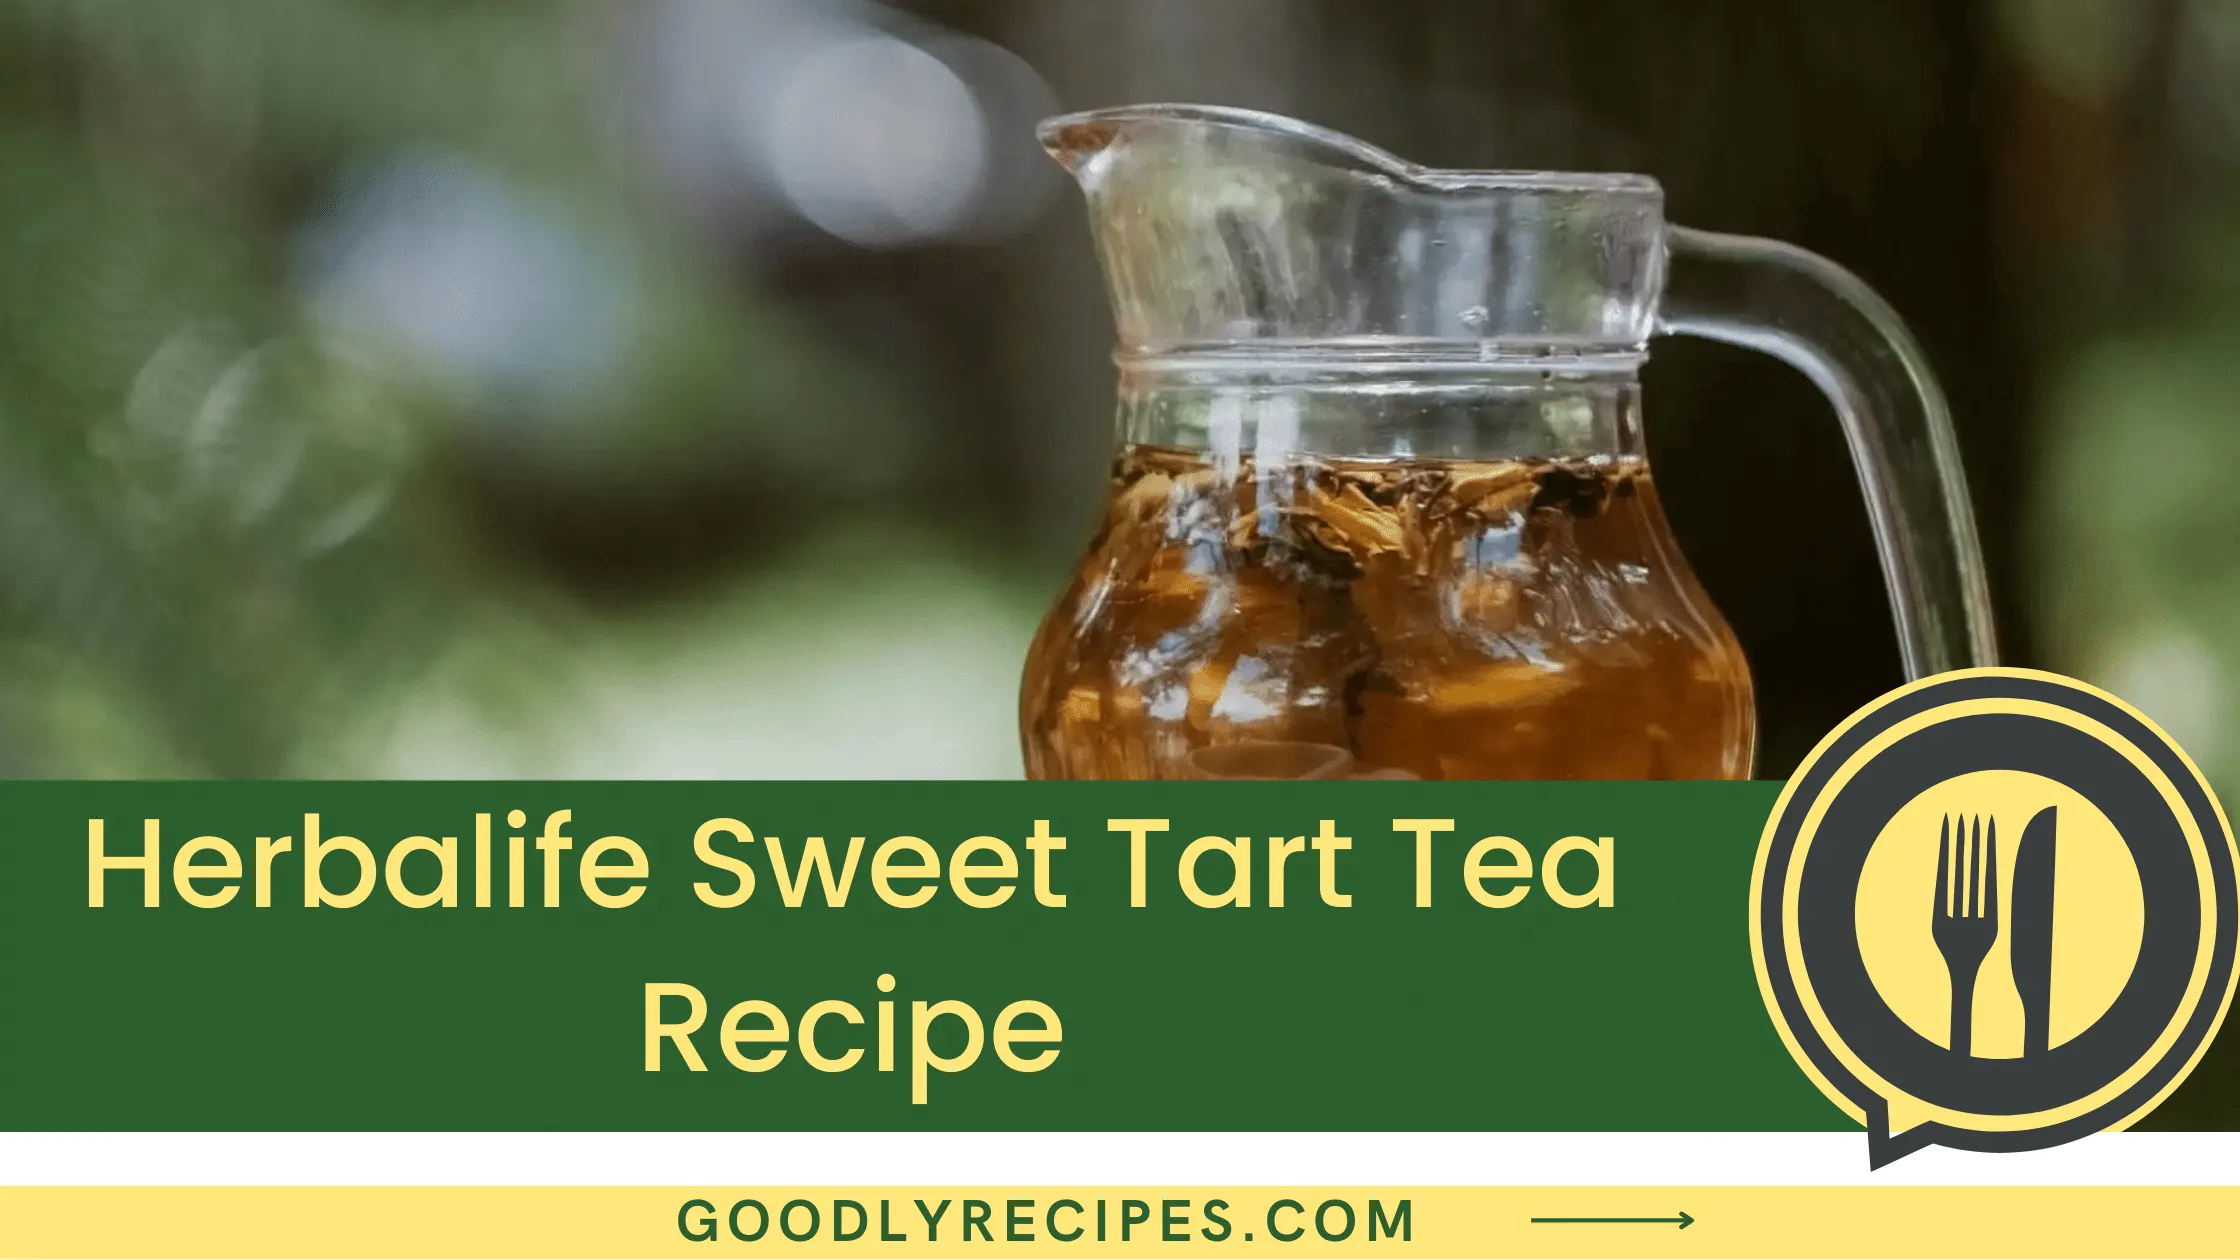 What is Herbalife Sweet Tart Tea?